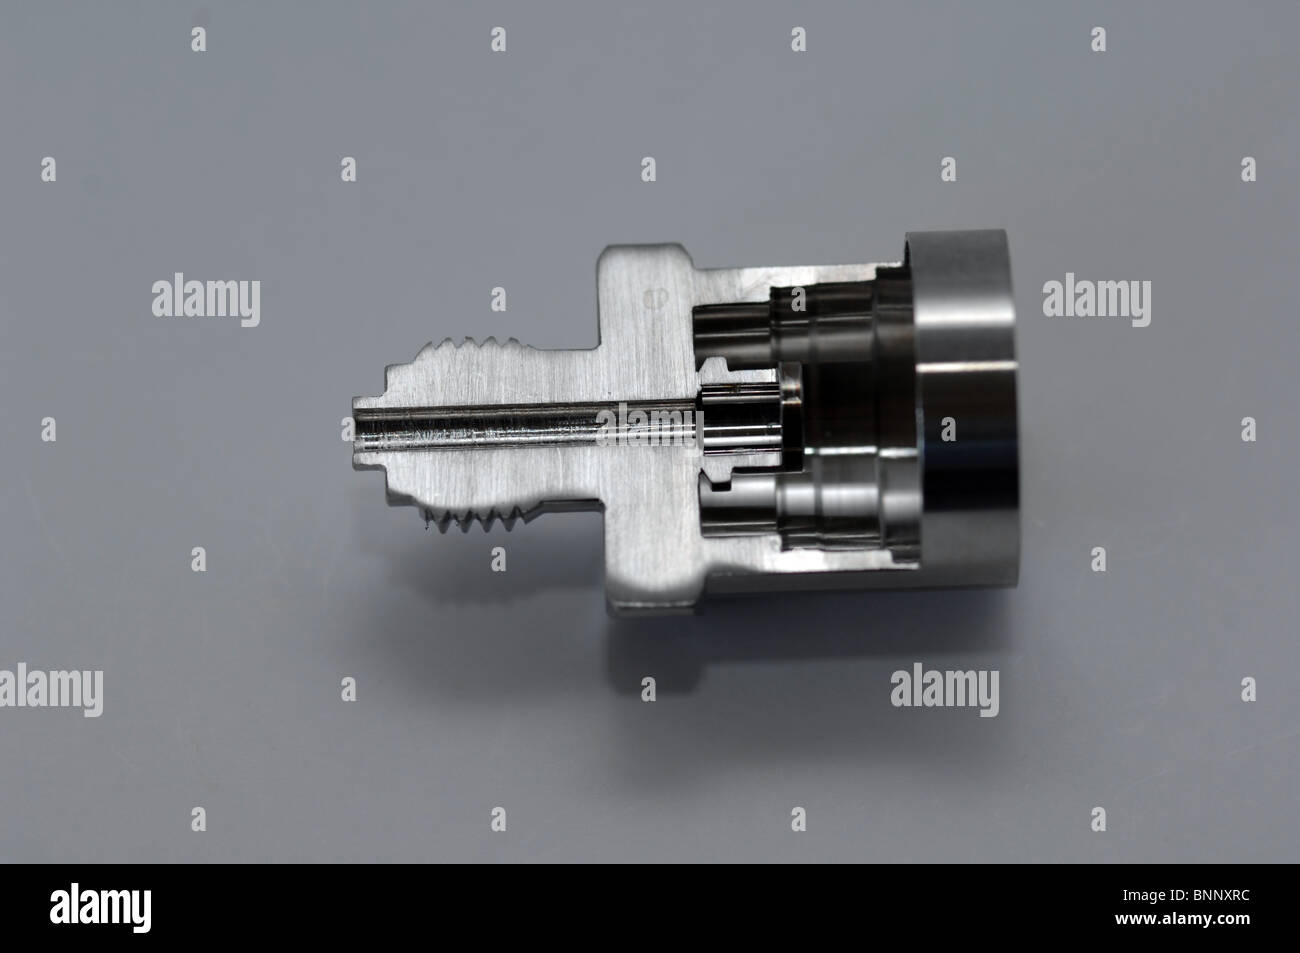 Capteur de pression électronique avec montage fileté, vue en coupe Banque D'Images